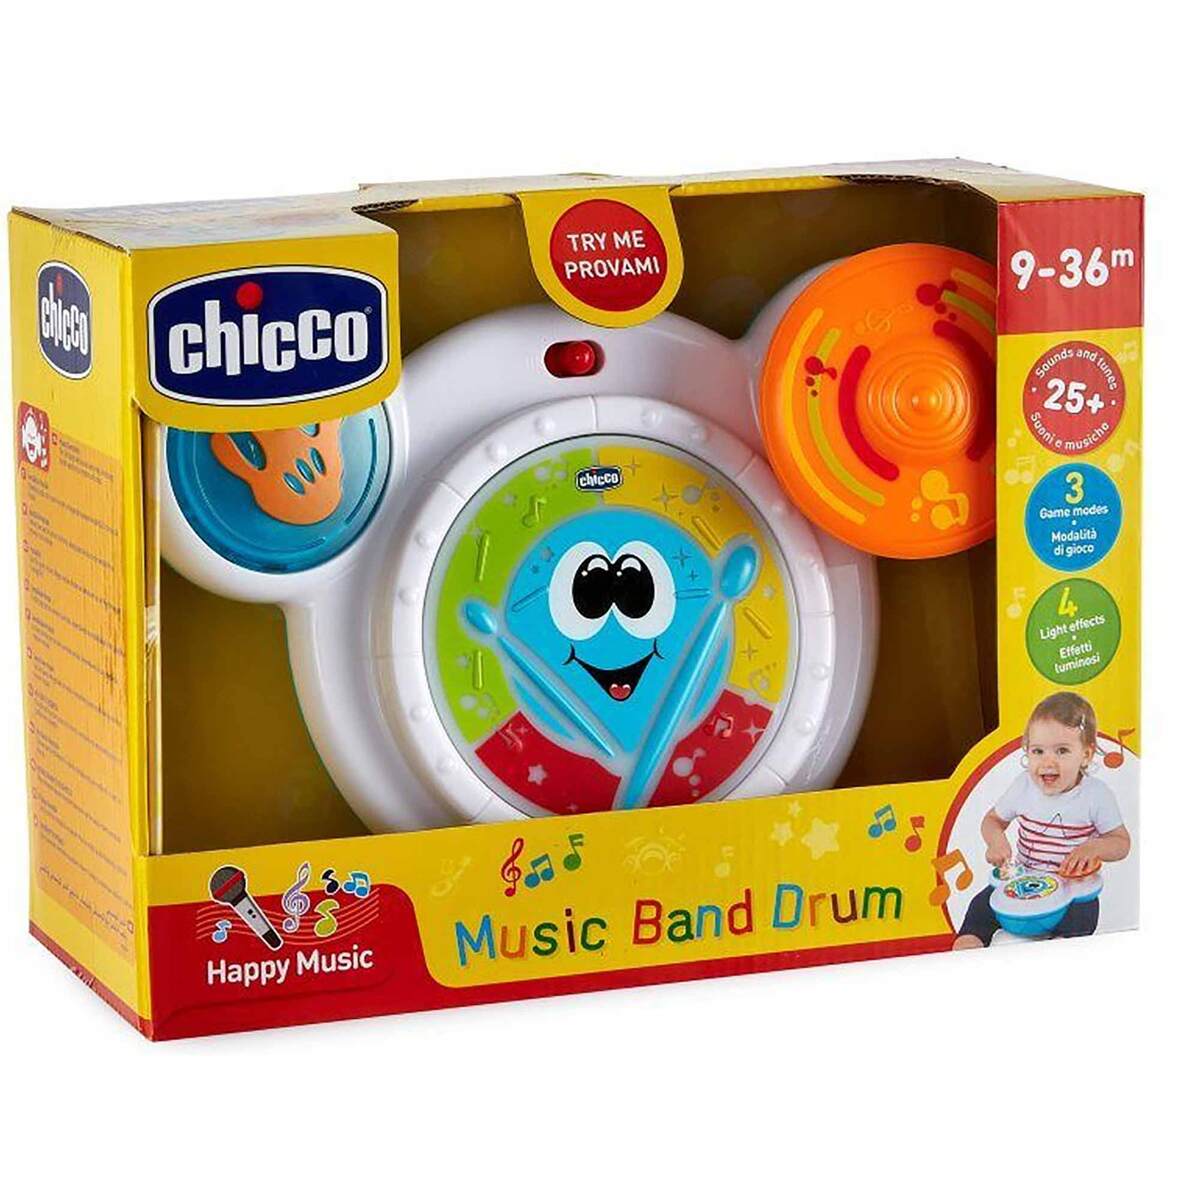 Chico Music Band Drum -6993-100